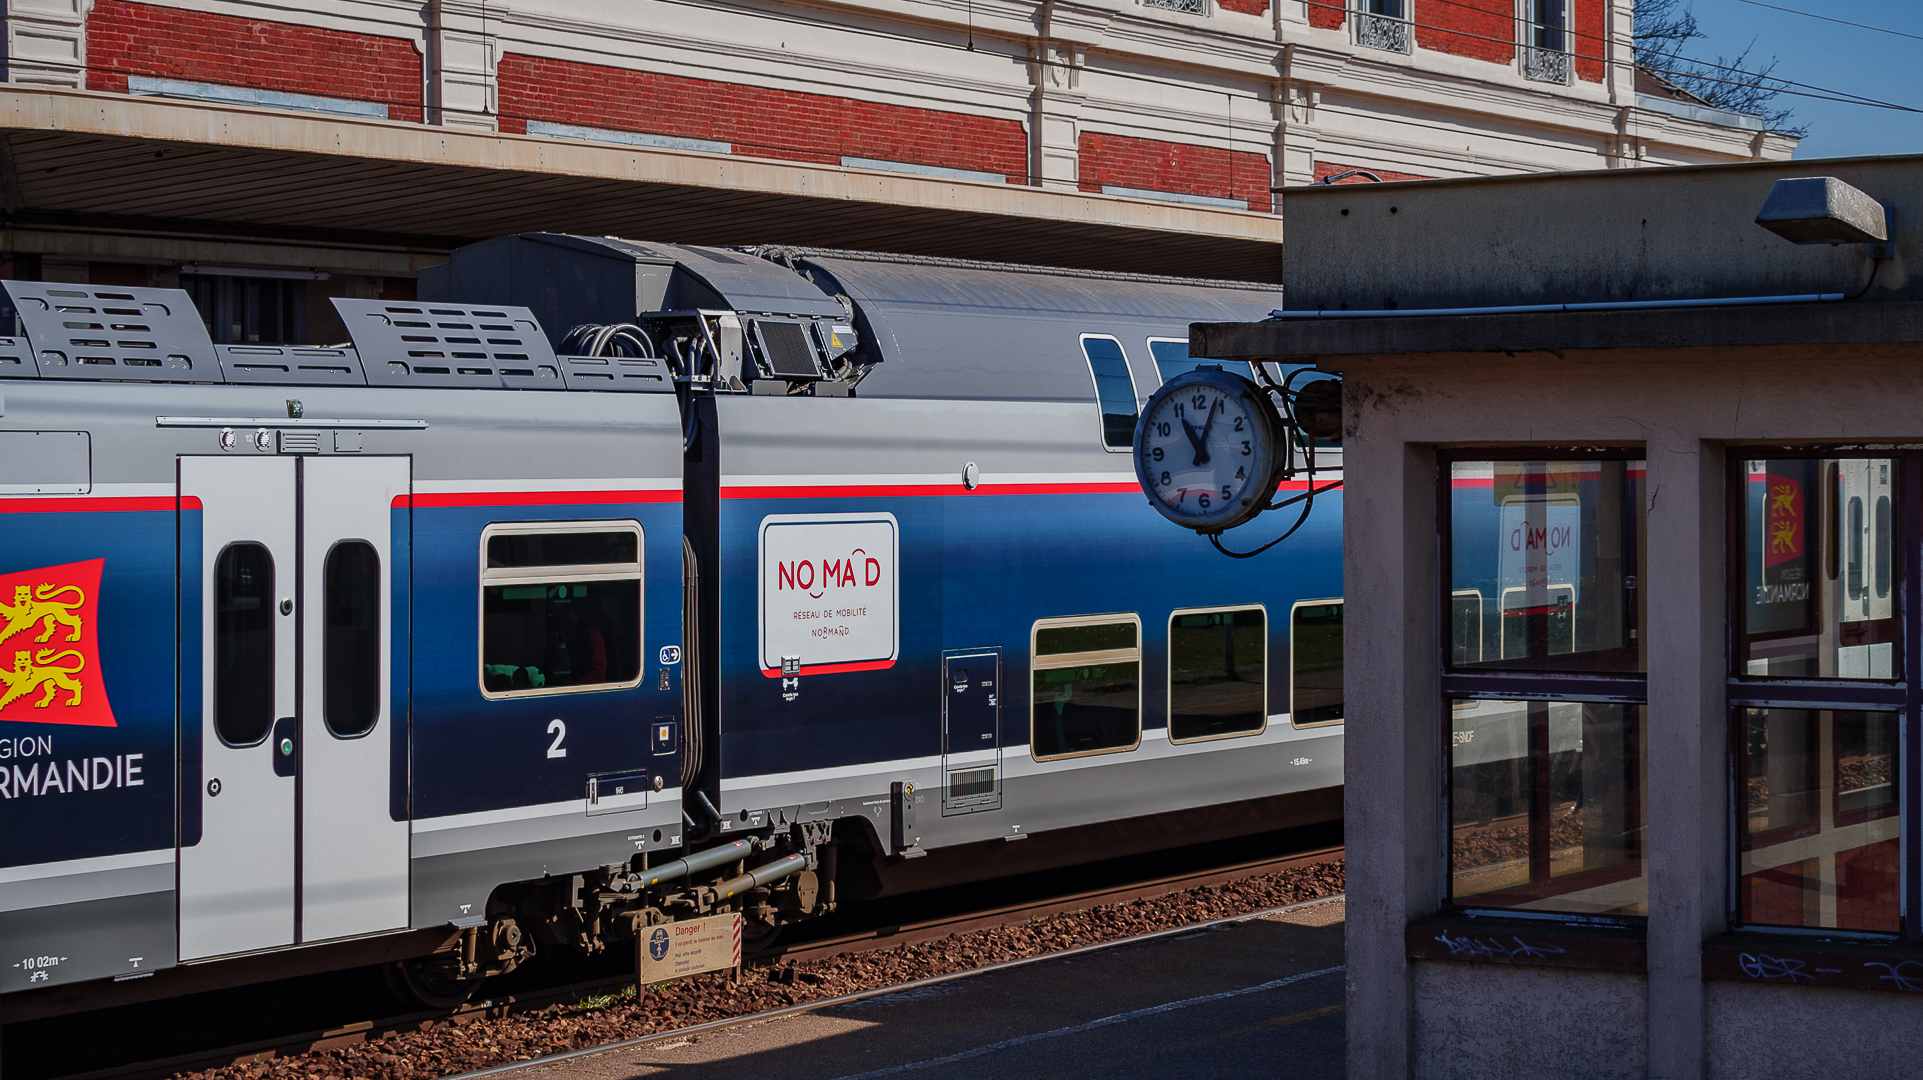 Les nouveaux trains NOMAD déployés par le Région Normandie en 2020 assurent une liaison de qualité avec Paris Saint Lazare